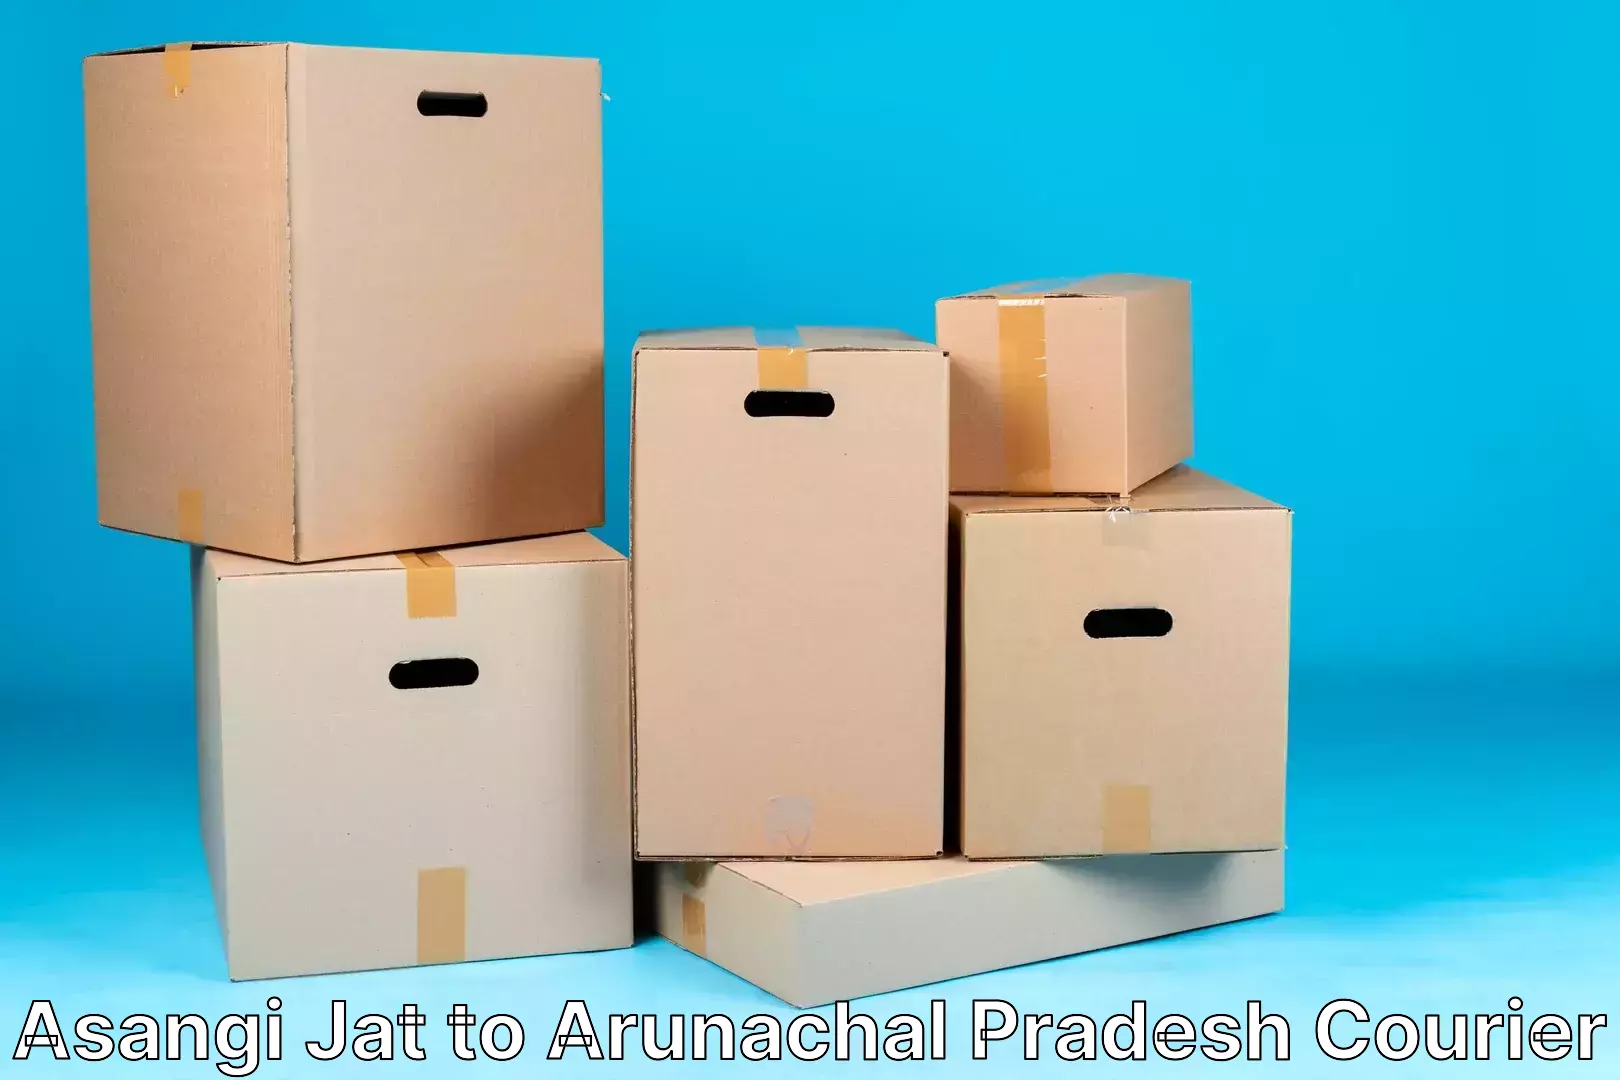 Luggage transport service Asangi Jat to Arunachal Pradesh